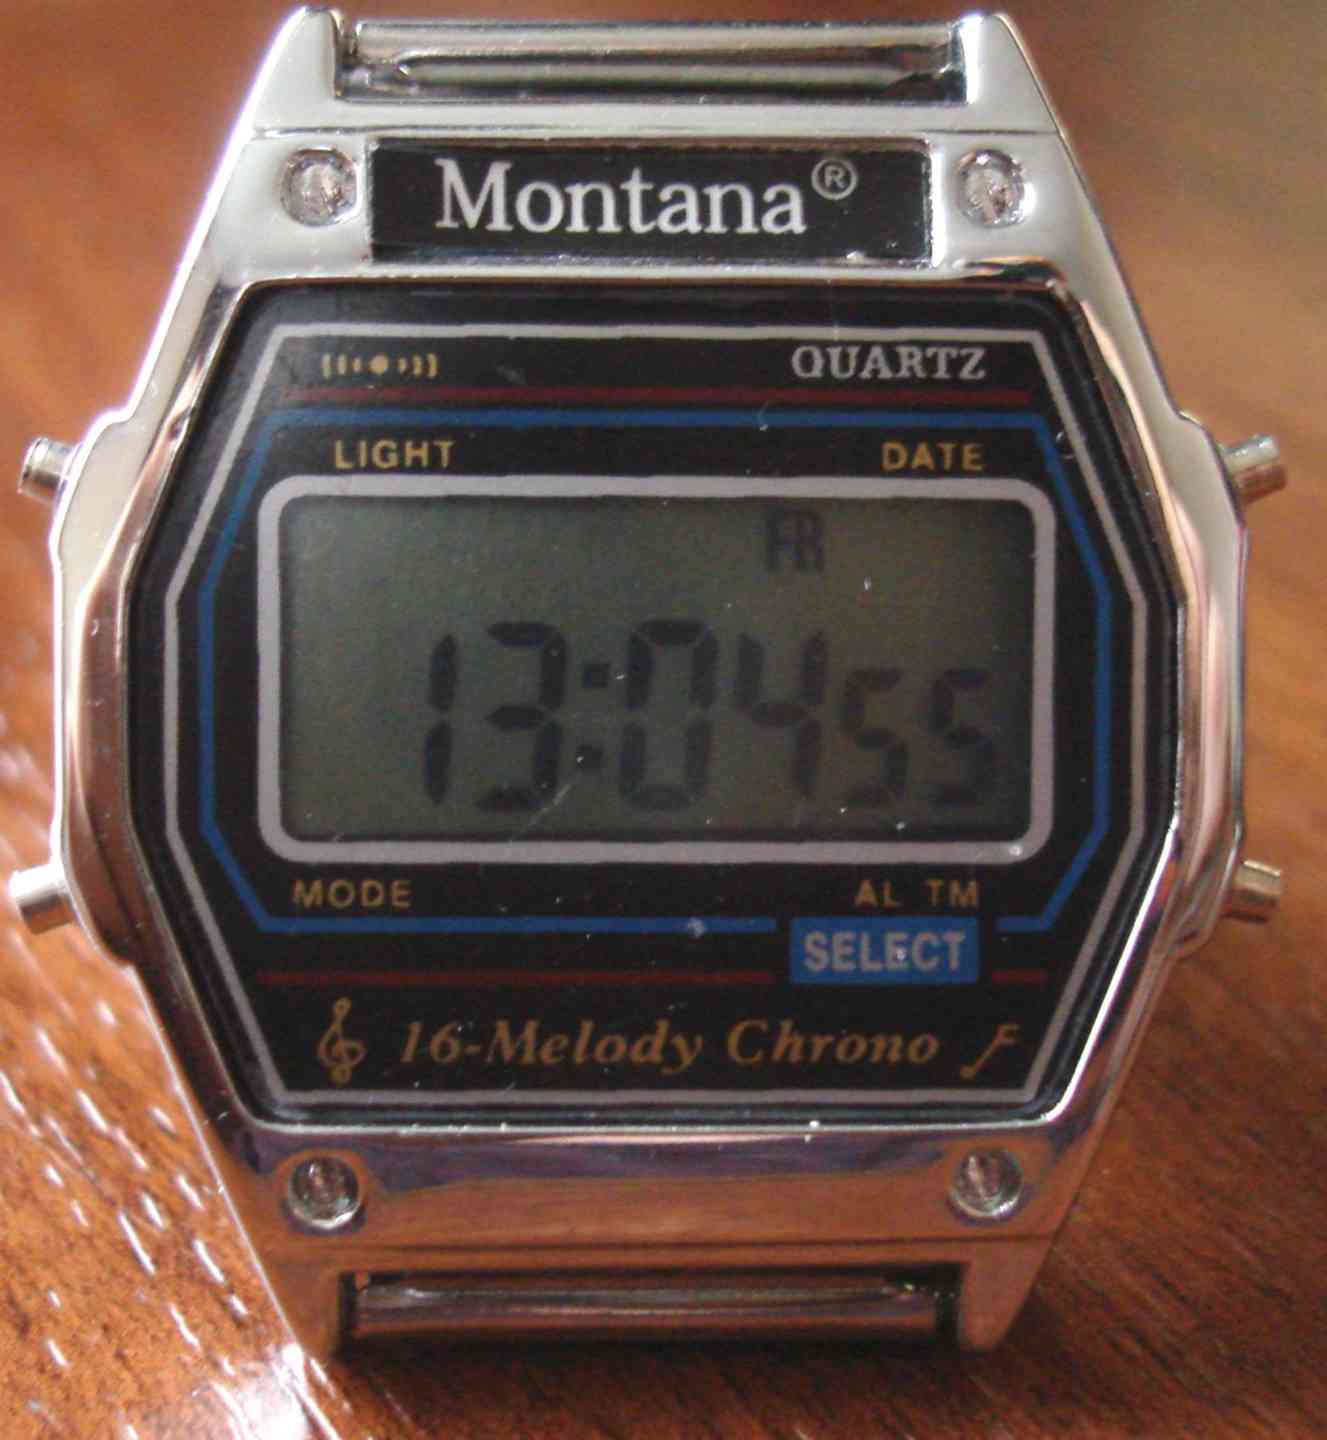 Часы монтана 90 х оригинал. Часы Монтана 16 Мелоди. Часы Montana 16 мелодий. Часы электроника 16 мелодий. Часы Montana 7 Melody Chrono.